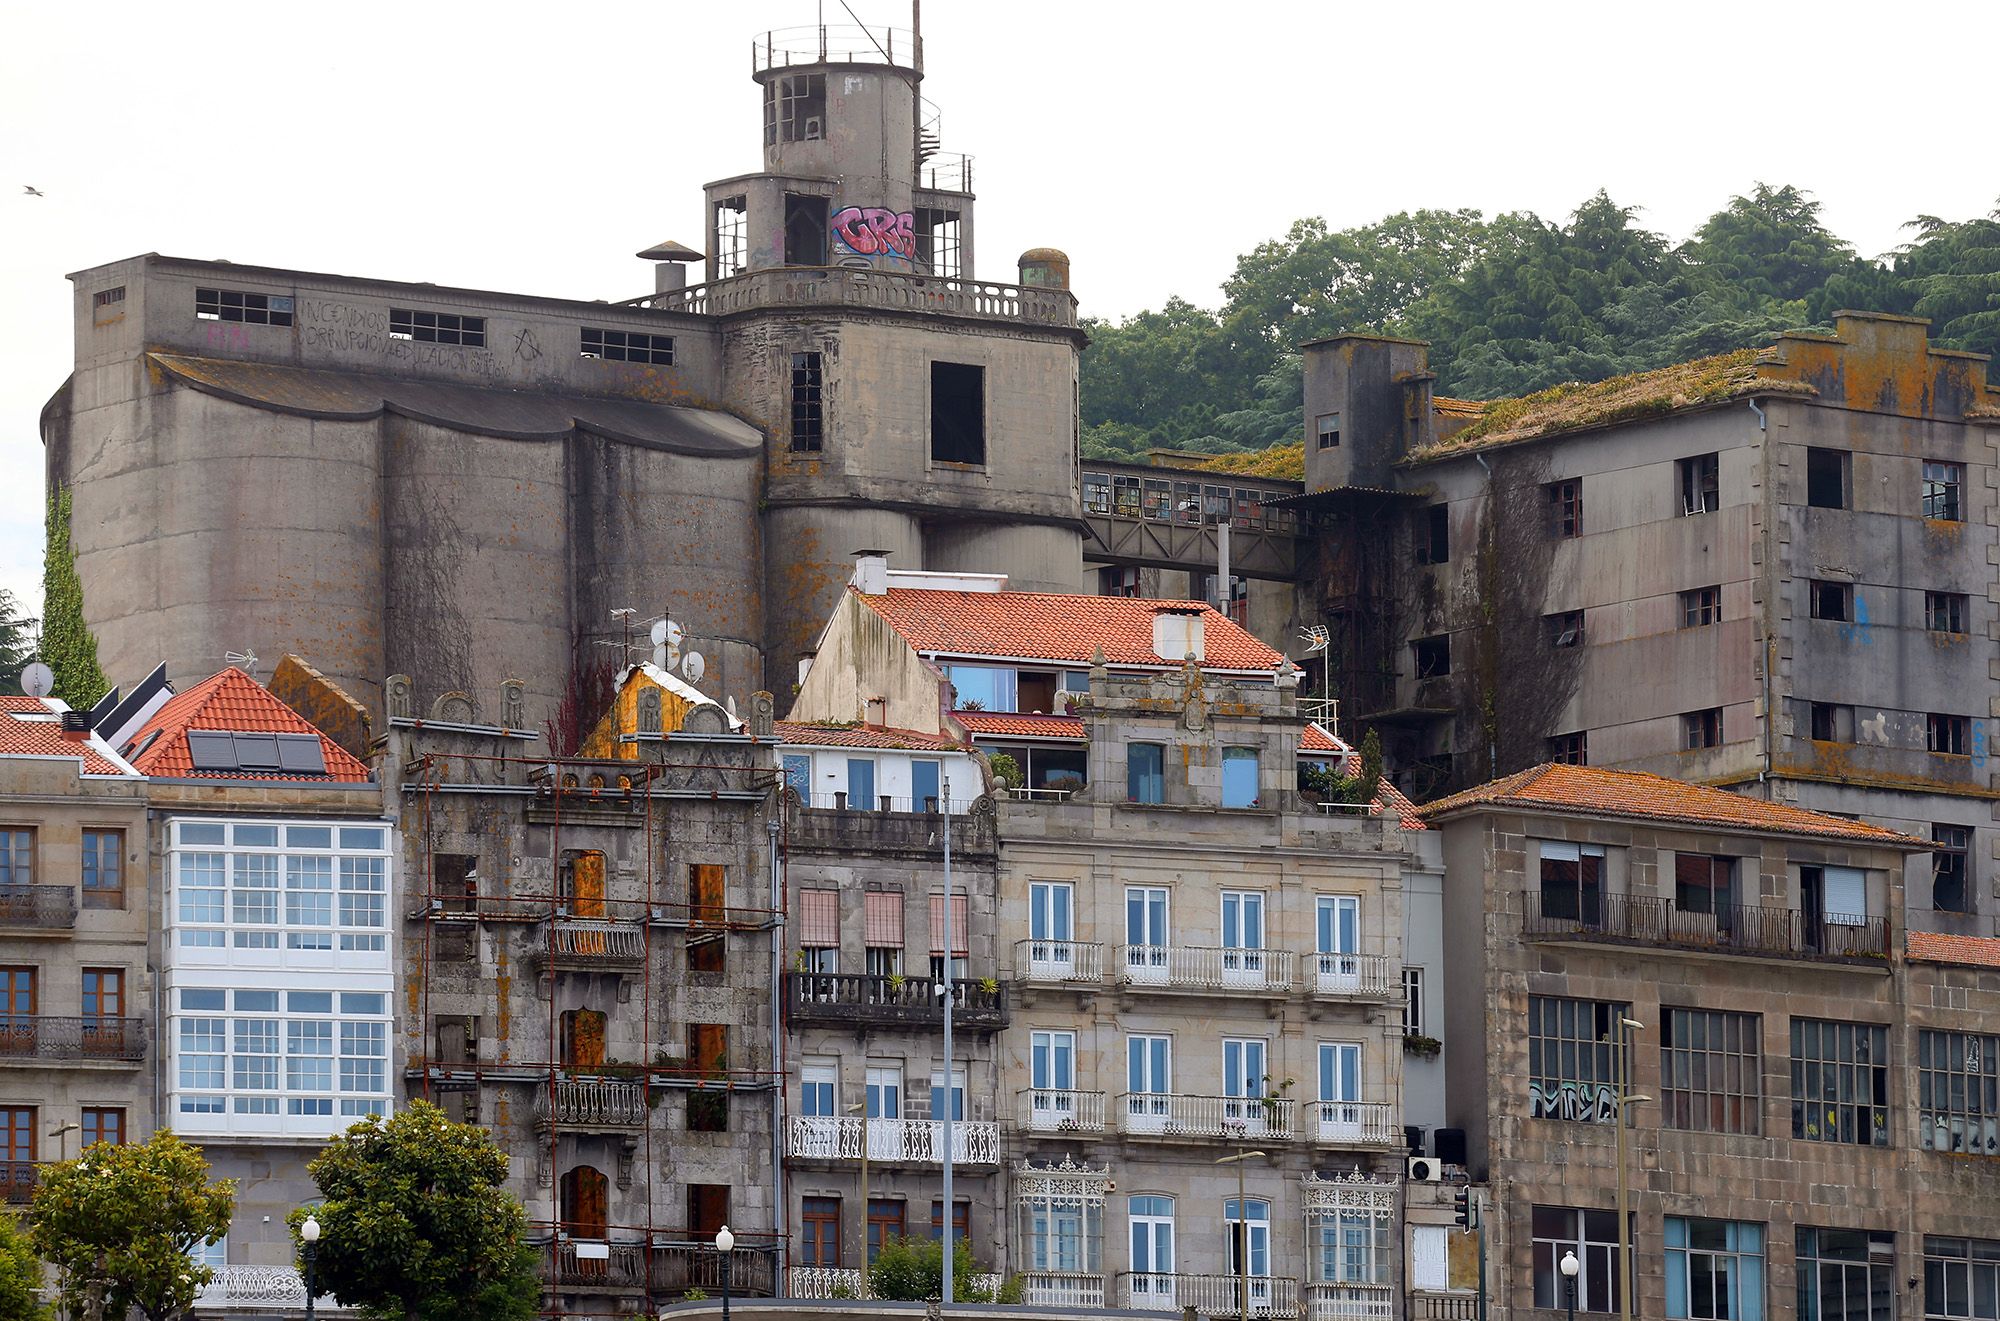 Vista general del edificio de la panificadora en ruinas en 2021 Marta G. Brea.jpg